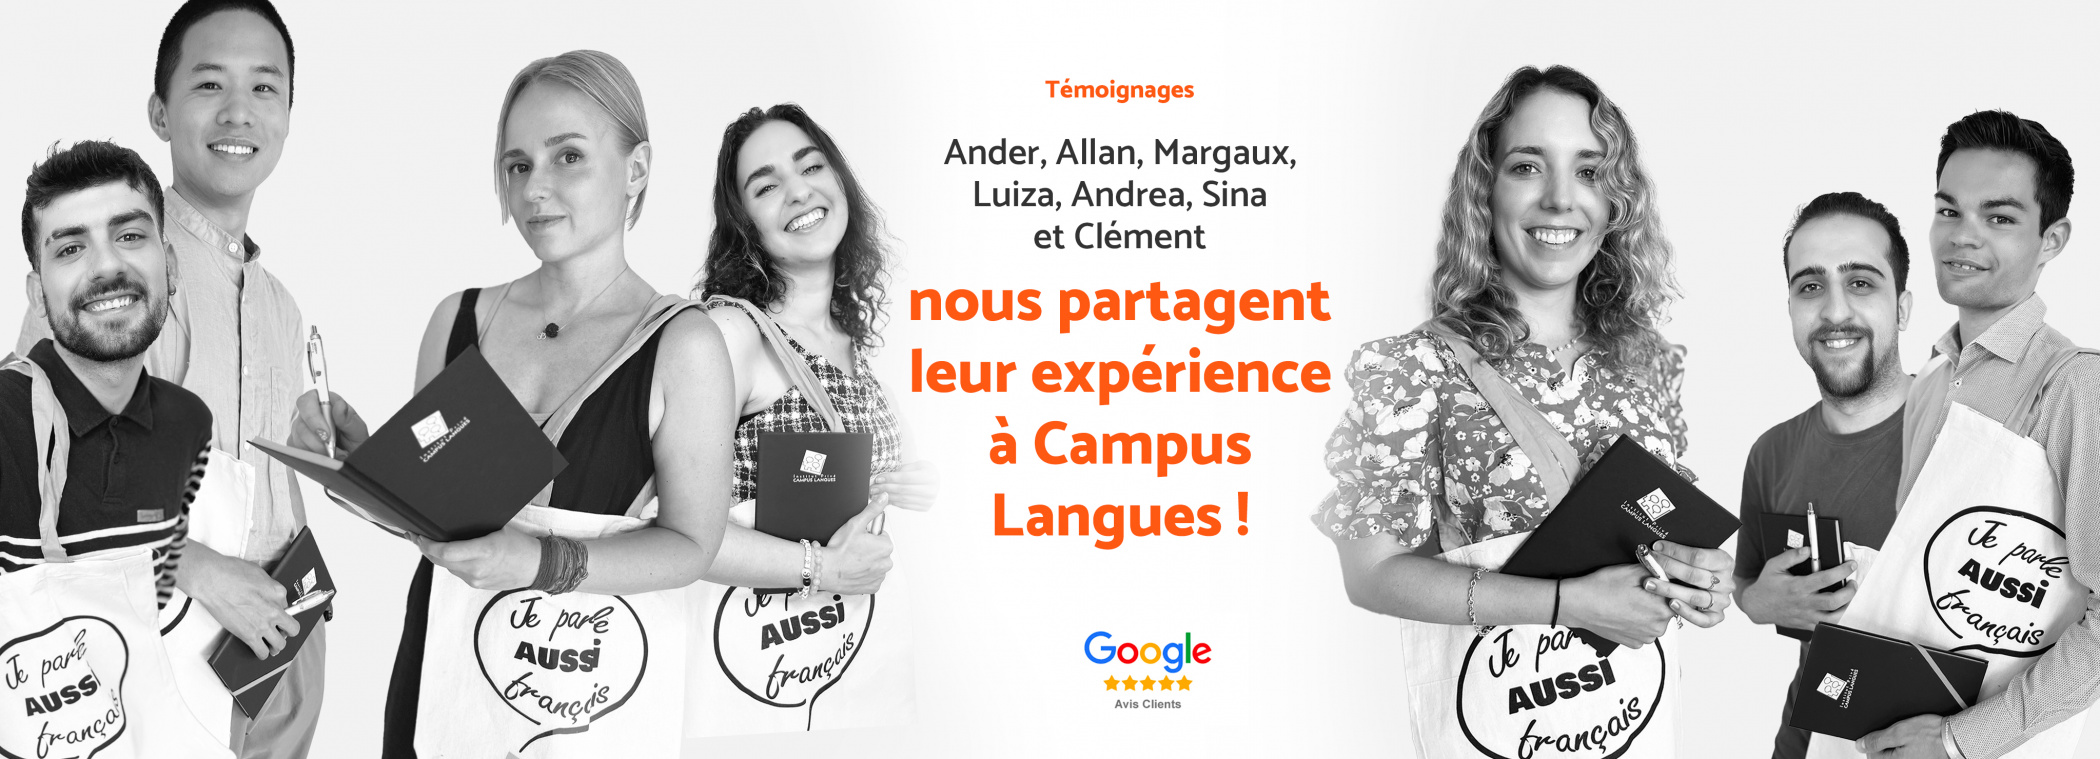 Illustration - Témoignages  Ander, Allan, Margaux, Luiza, Andrea, Sina et Clément nous partagent leur expérience à Campus Langues ! Laissez vous aussi votre avis google.